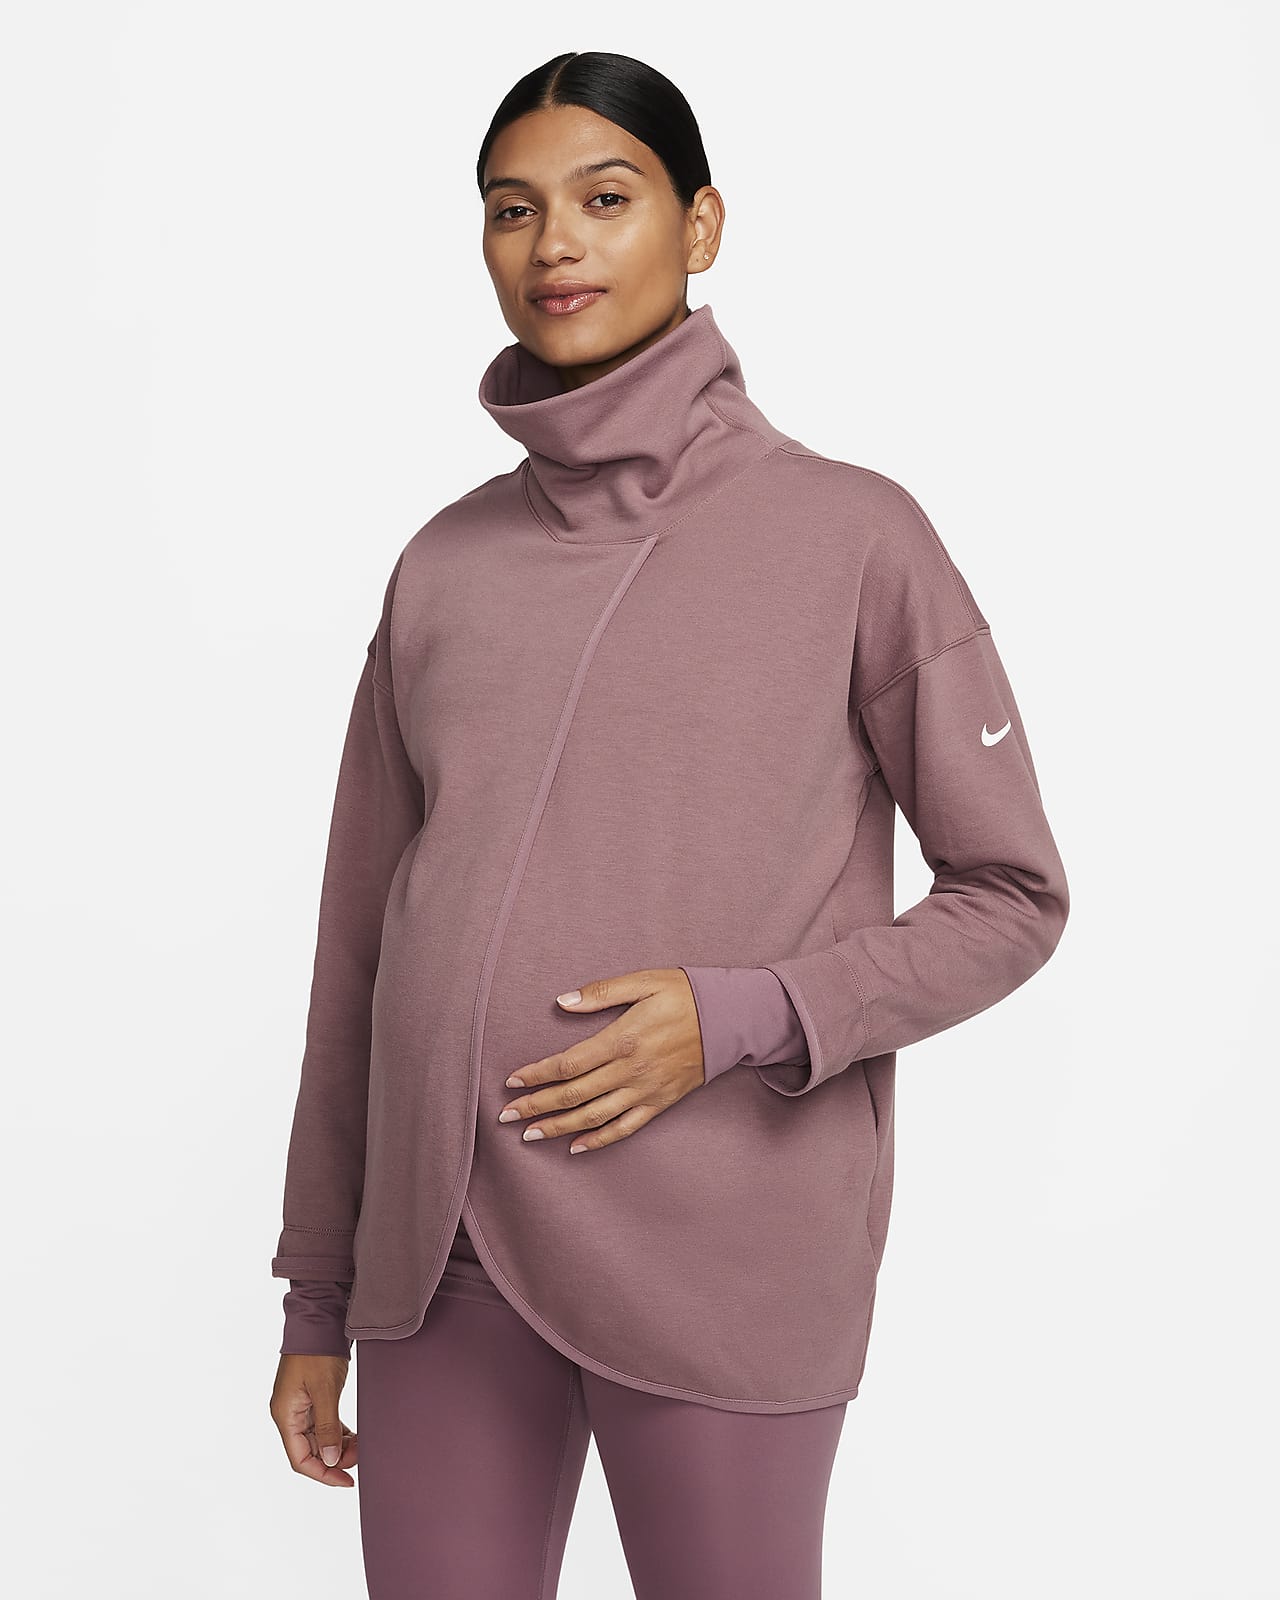 Sudadera reversible sin cierre para mujer (de maternidad) Nike (M)